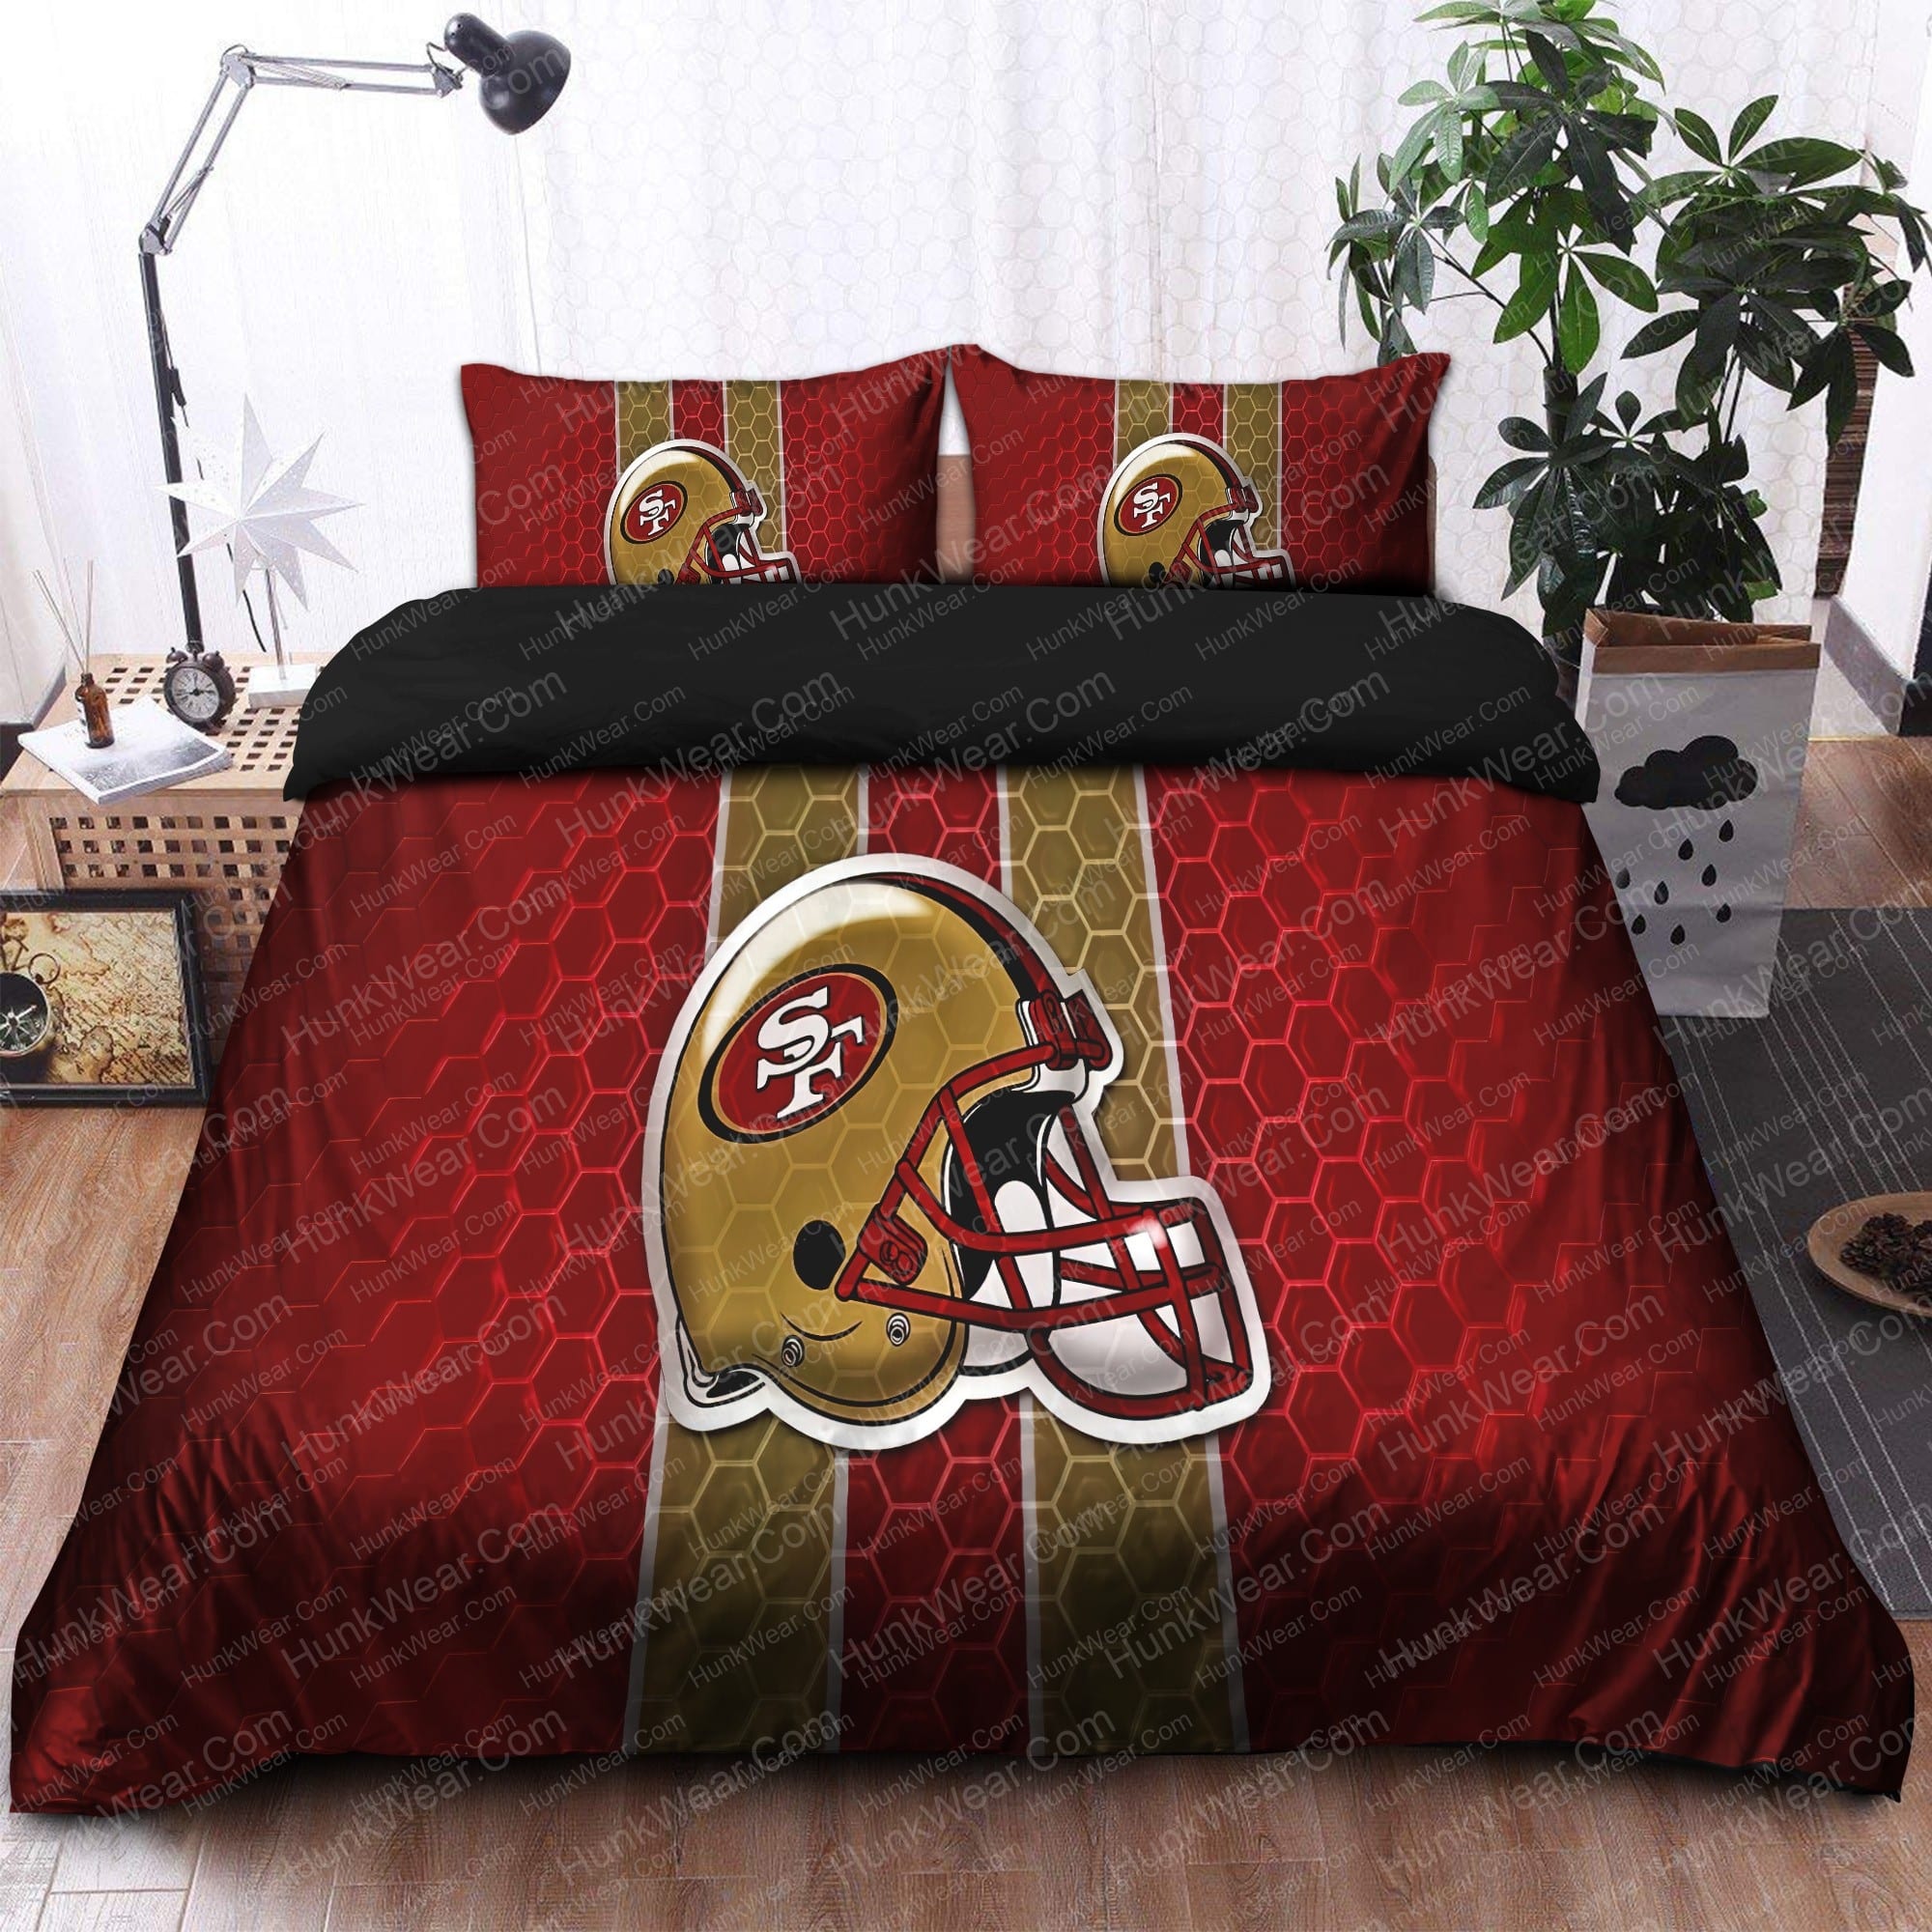 49ers helmet logo bed set bedding set 2